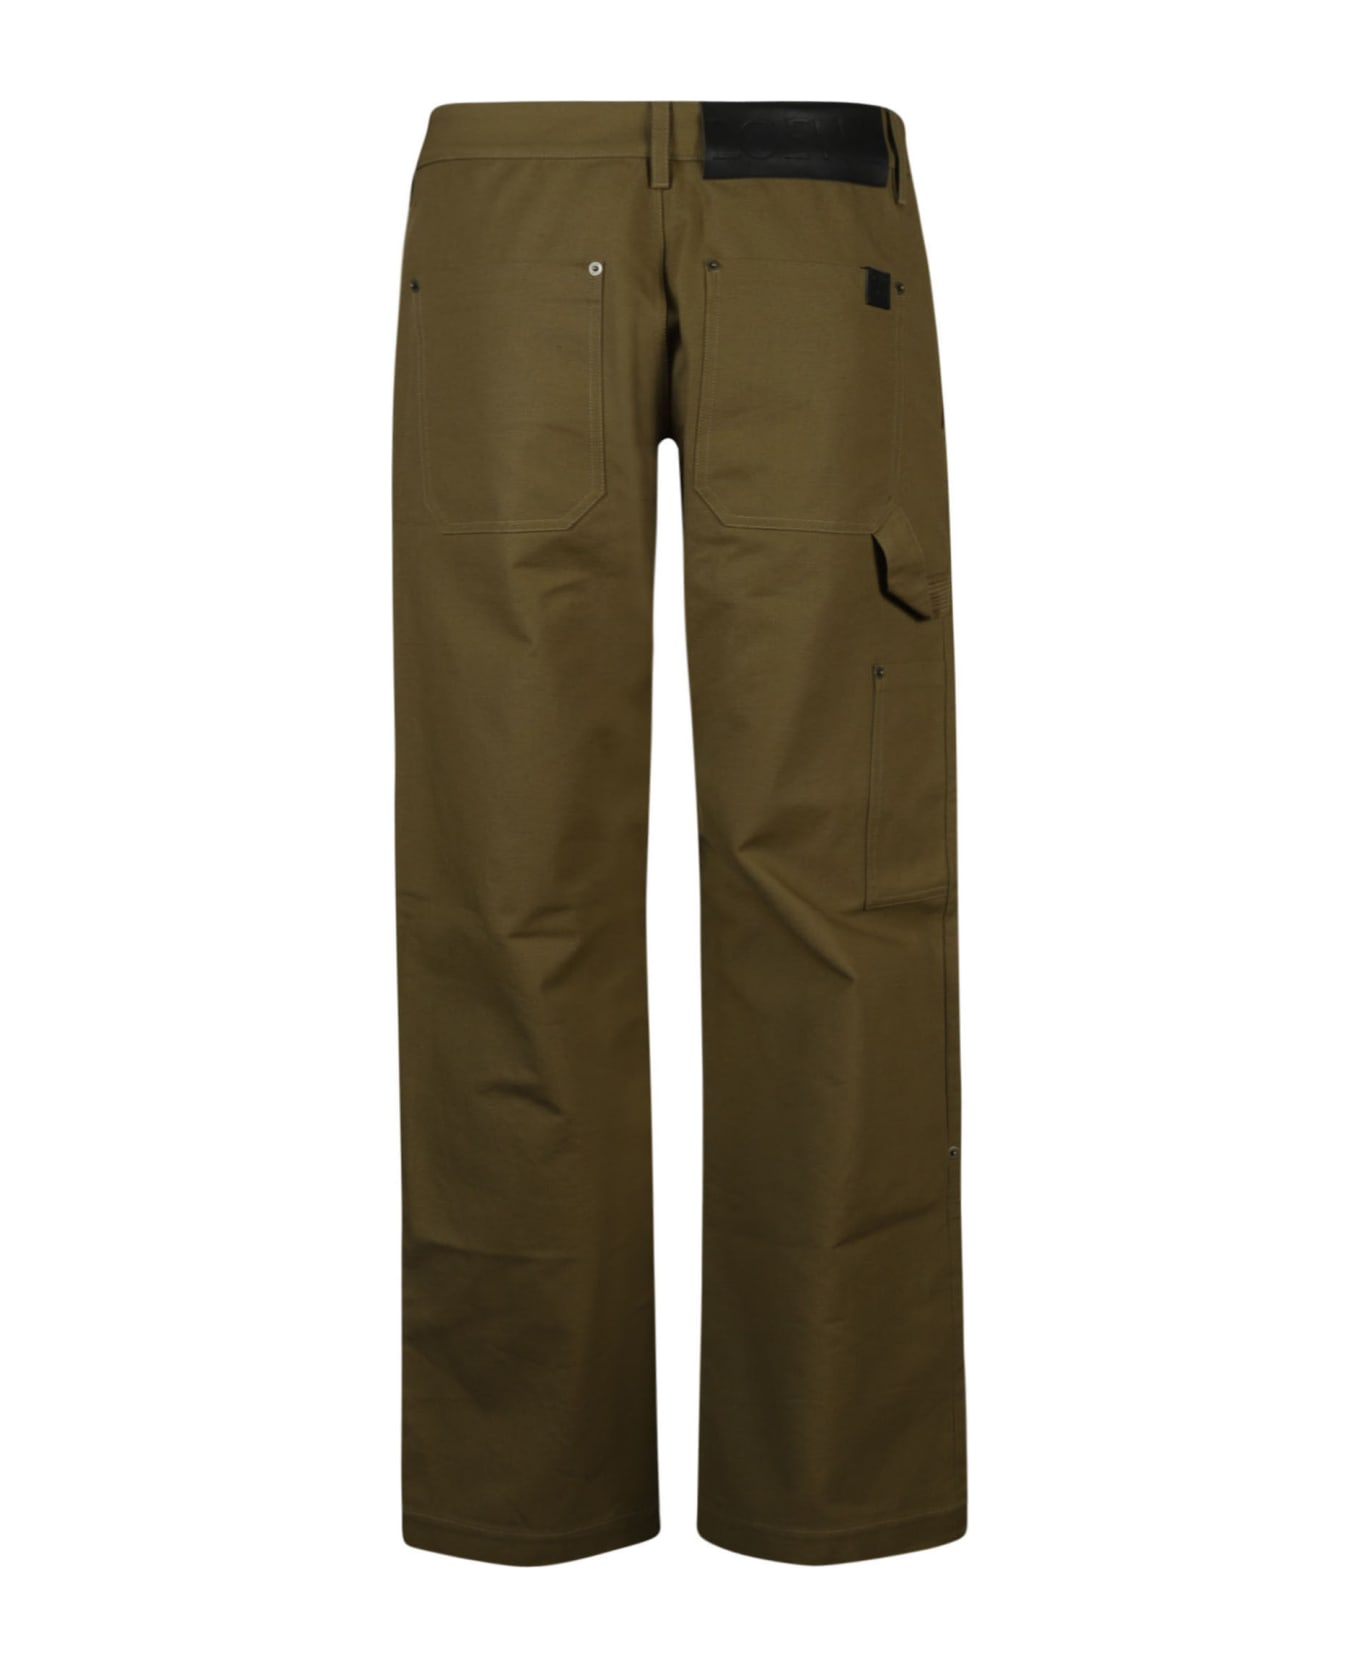 Loewe Workwear Trousers - Brown